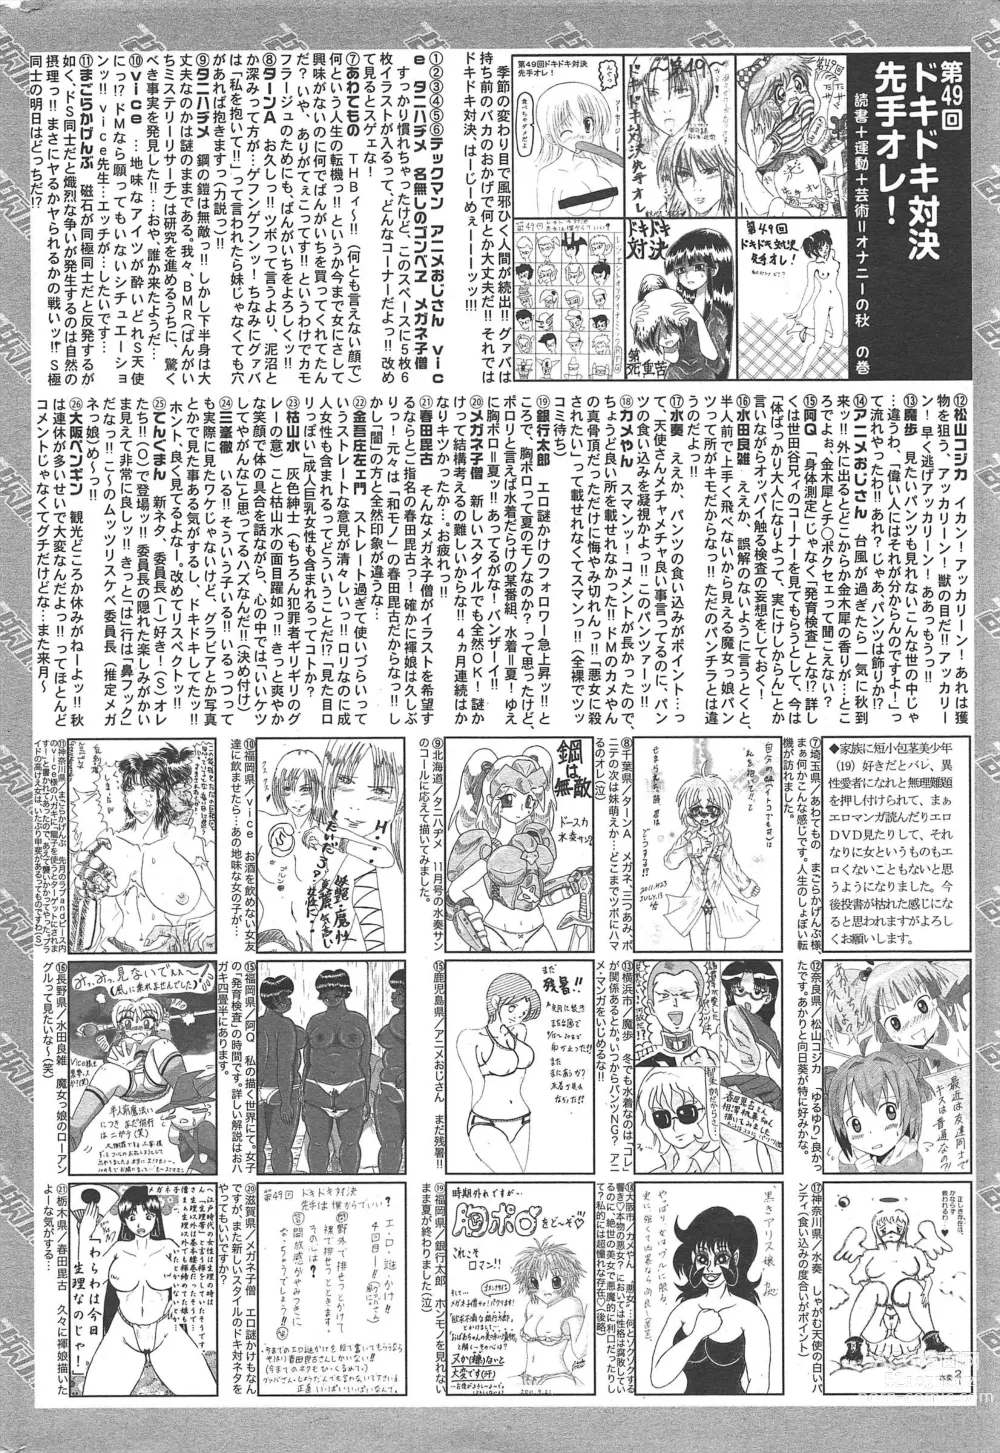 Page 324 of manga Manga Bangaichi 2011-12